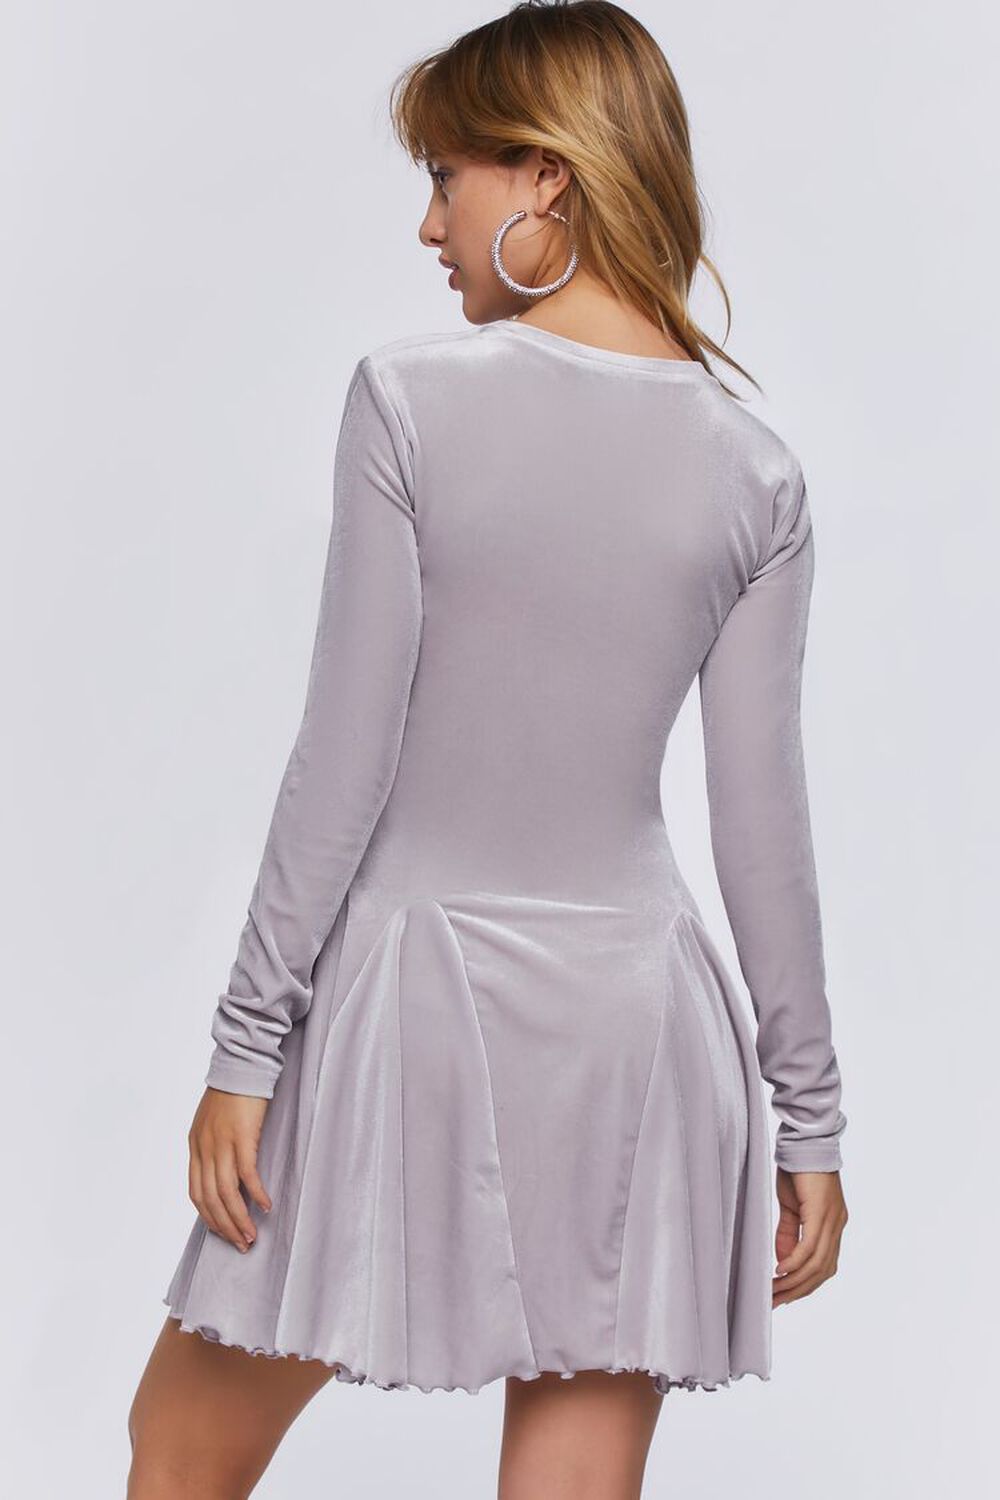 SILVER Velvet Fit & Flare Mini Dress, image 3